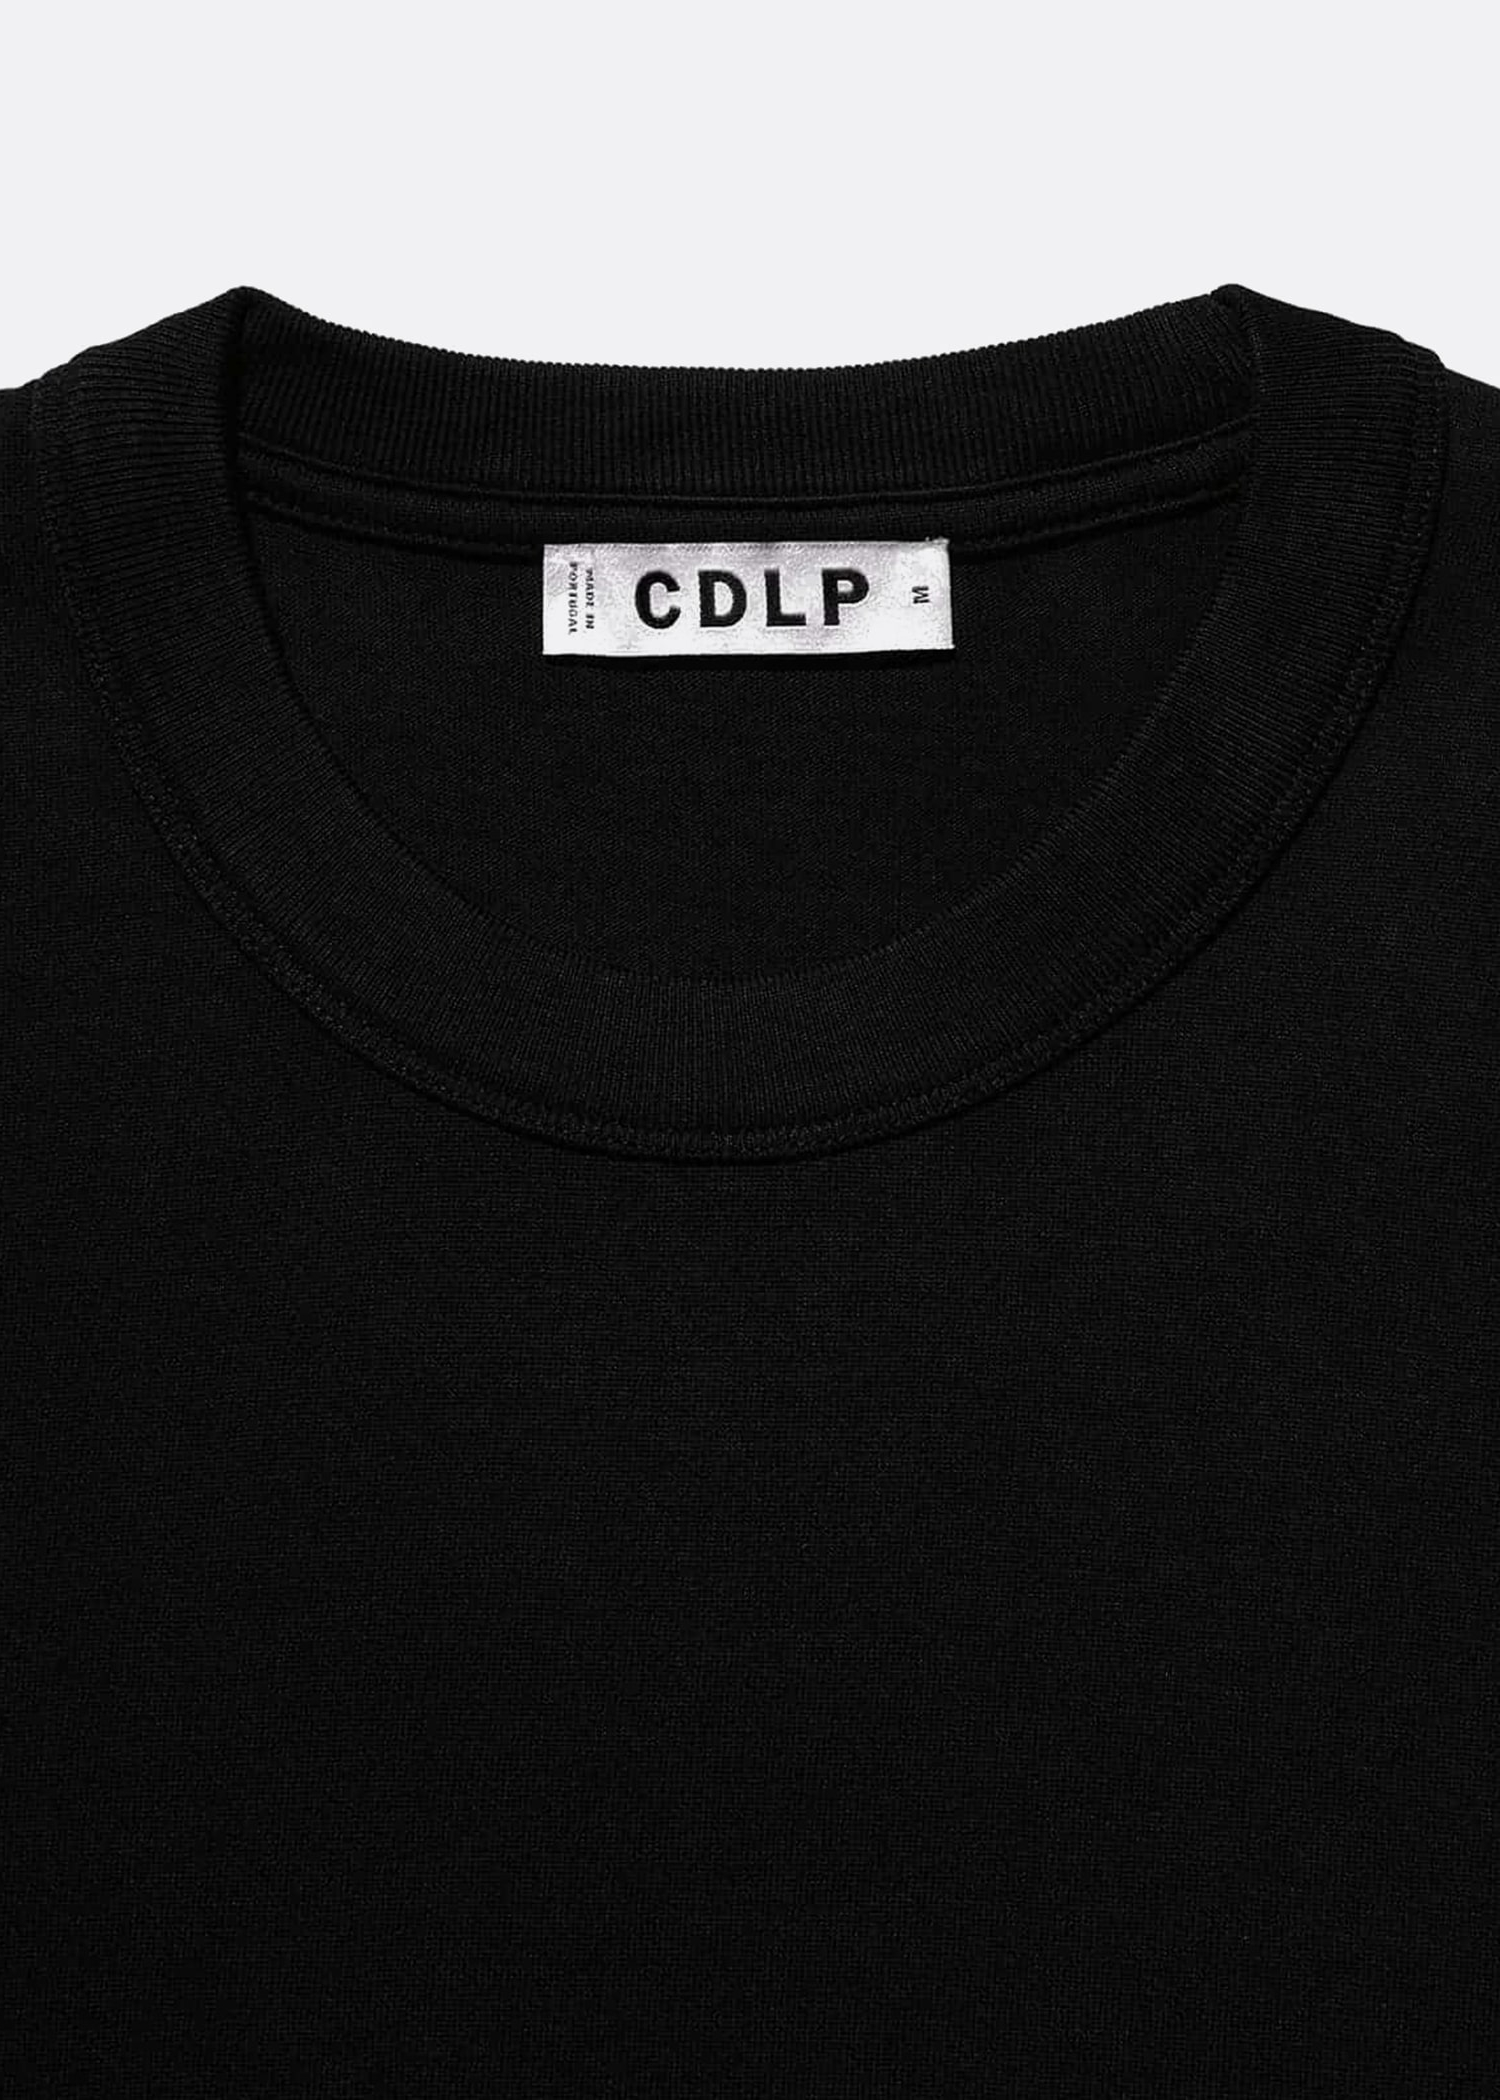 CDLP Black Heavyweight T-shirt